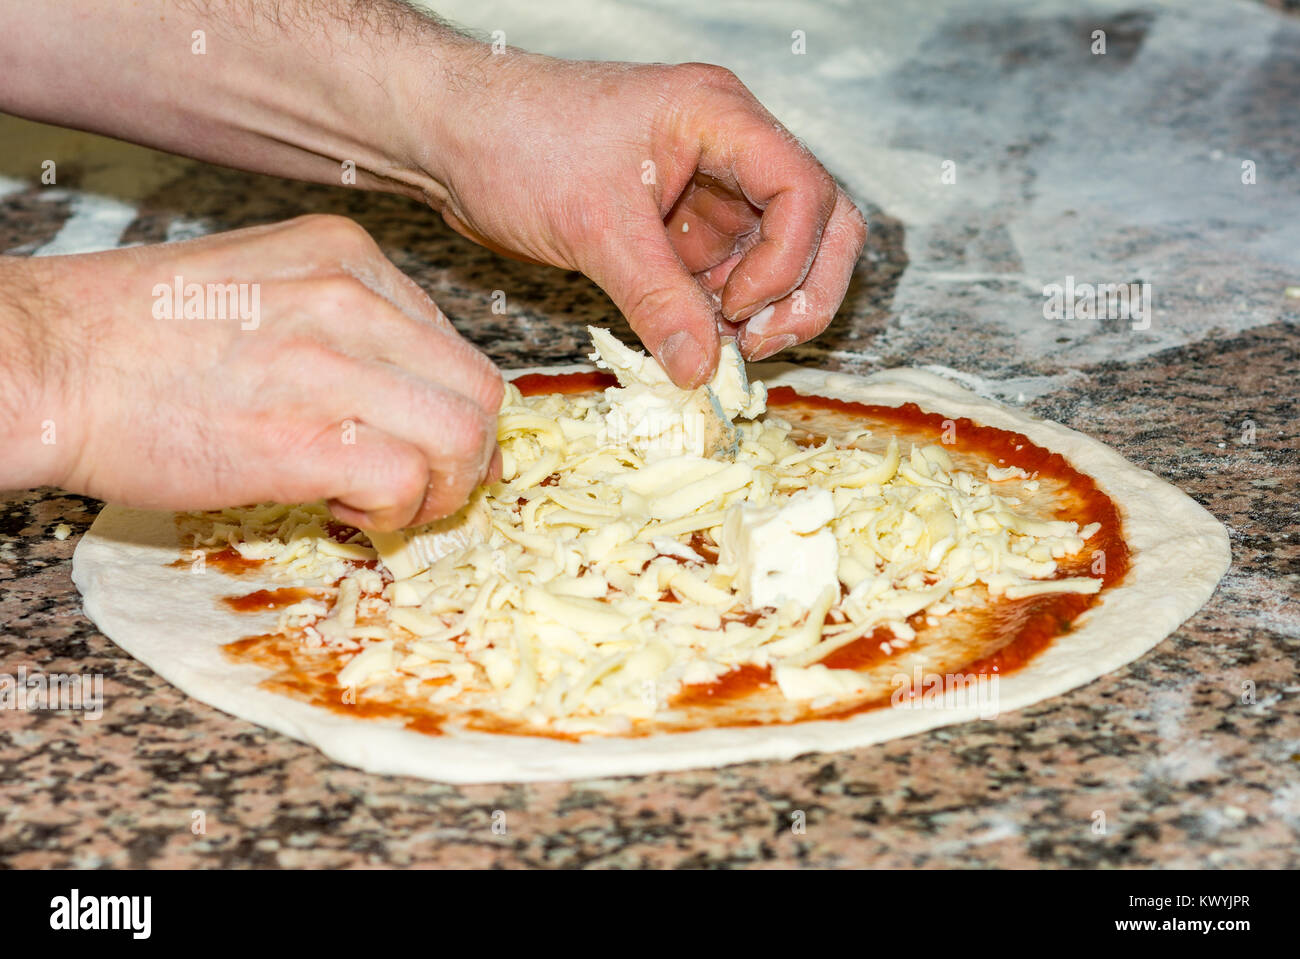 Raw original italiana fresca pizza, pasta preparación en estilo tradicional: el chef distribuye el queso. Comida, cocina italiana y cocina concepto. Foto de stock